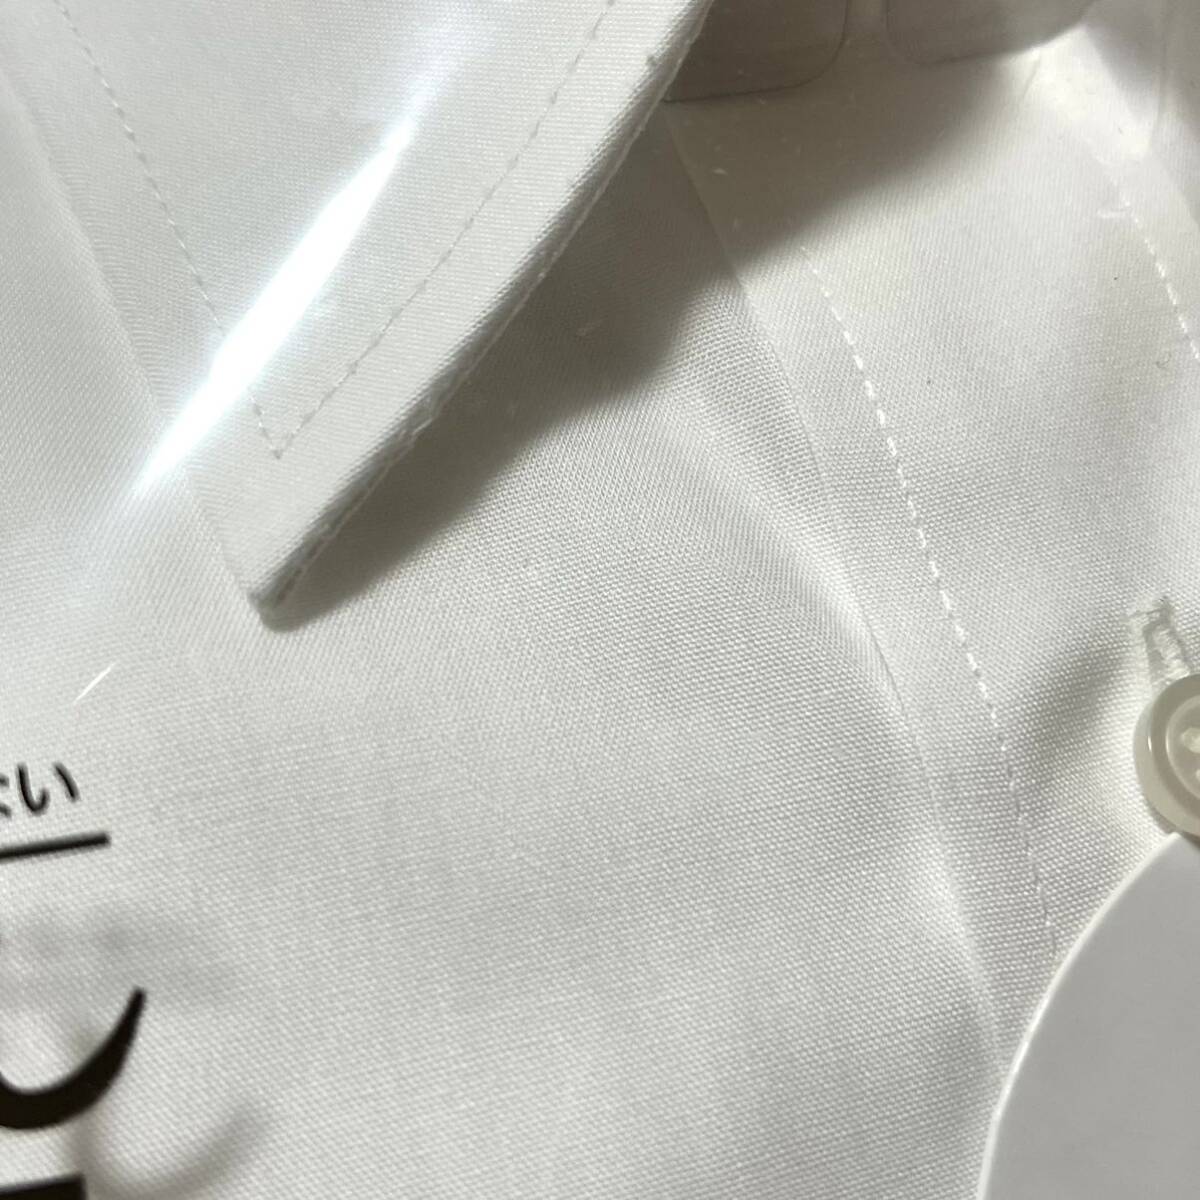 【新品】メンズ 長袖 ワイシャツ【524】形態安定 抗菌防臭 吸水速乾 Yシャツ ホワイト 白 38 80 2枚セット